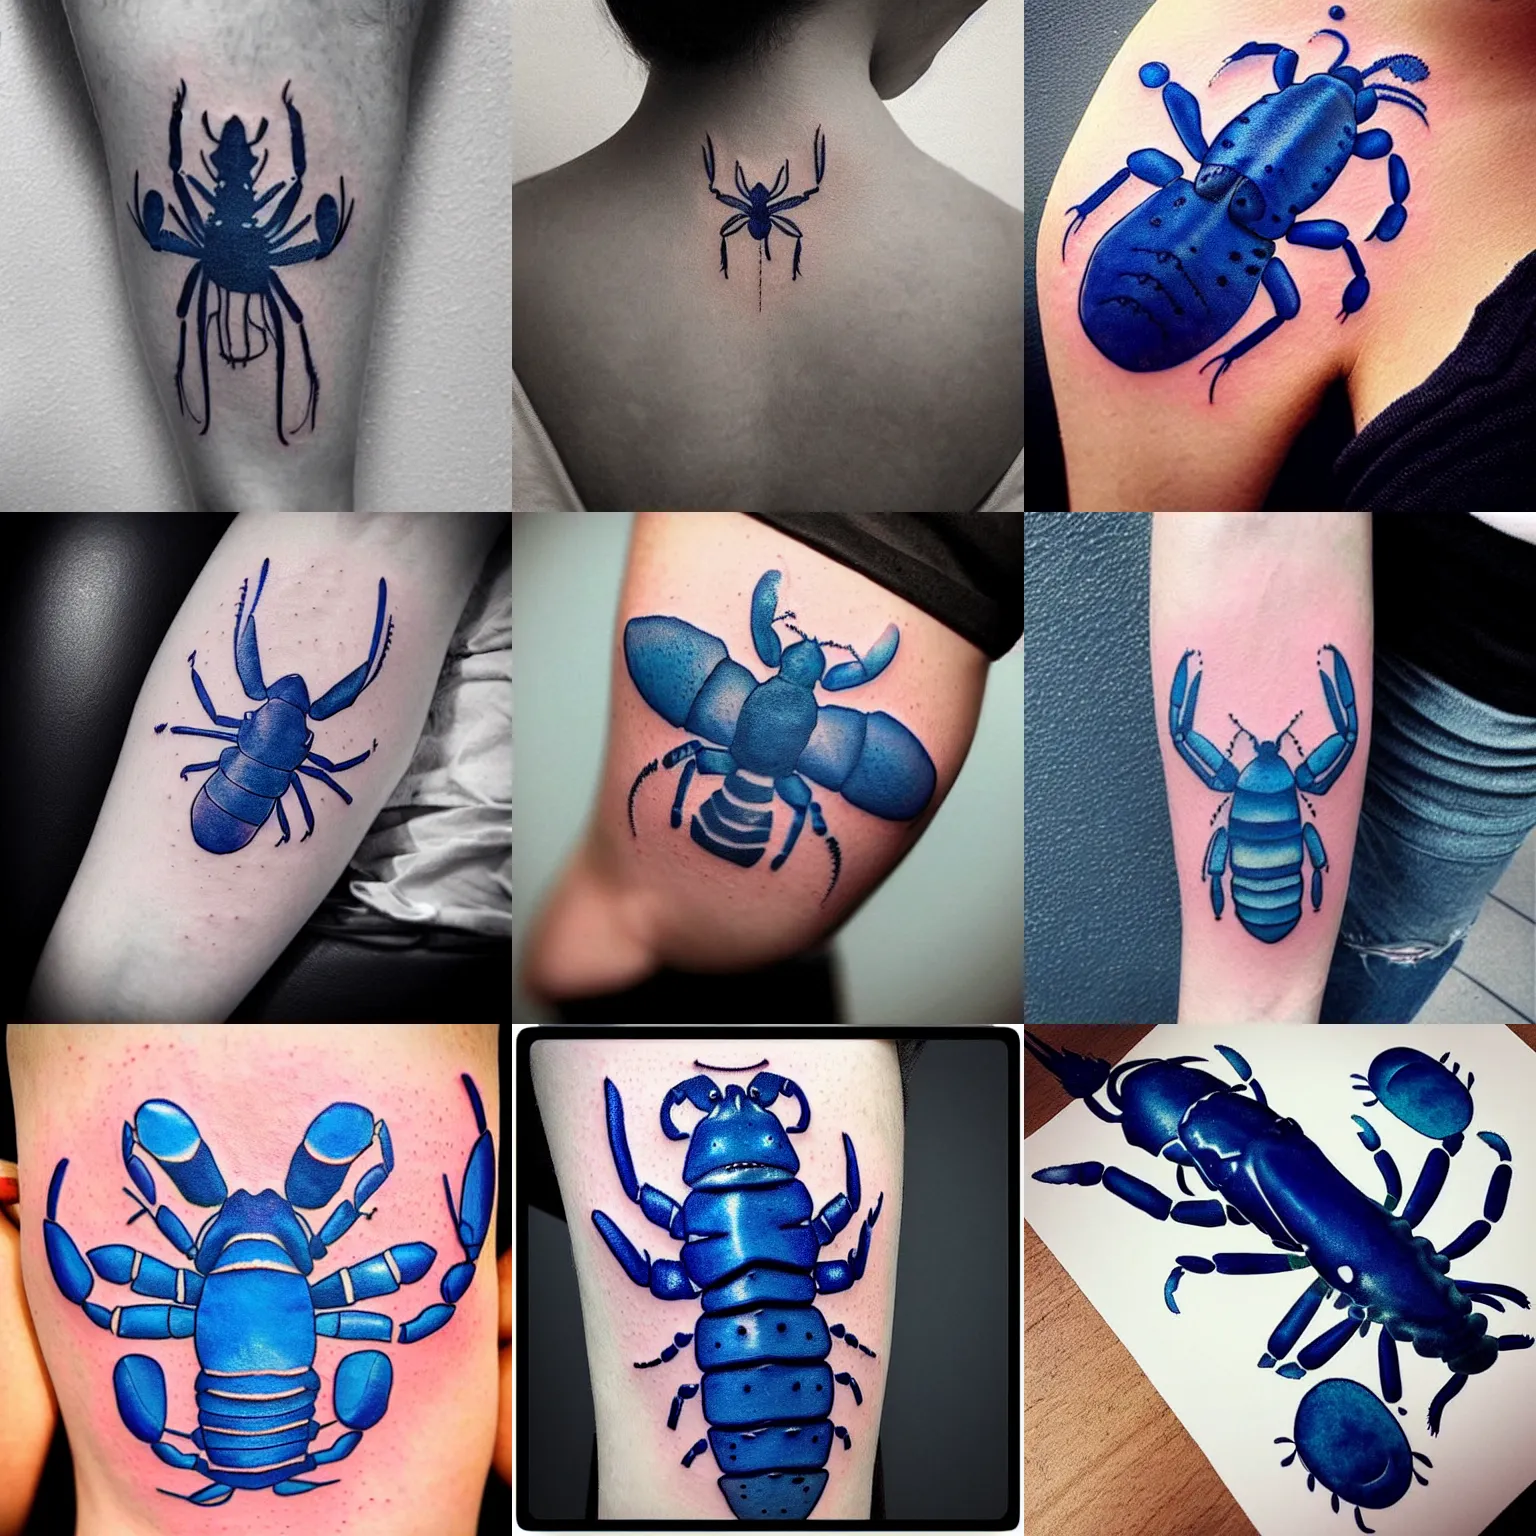 Prompt: “minimalistic blue lobster tattoo design, high quality instagram tattoo artist”